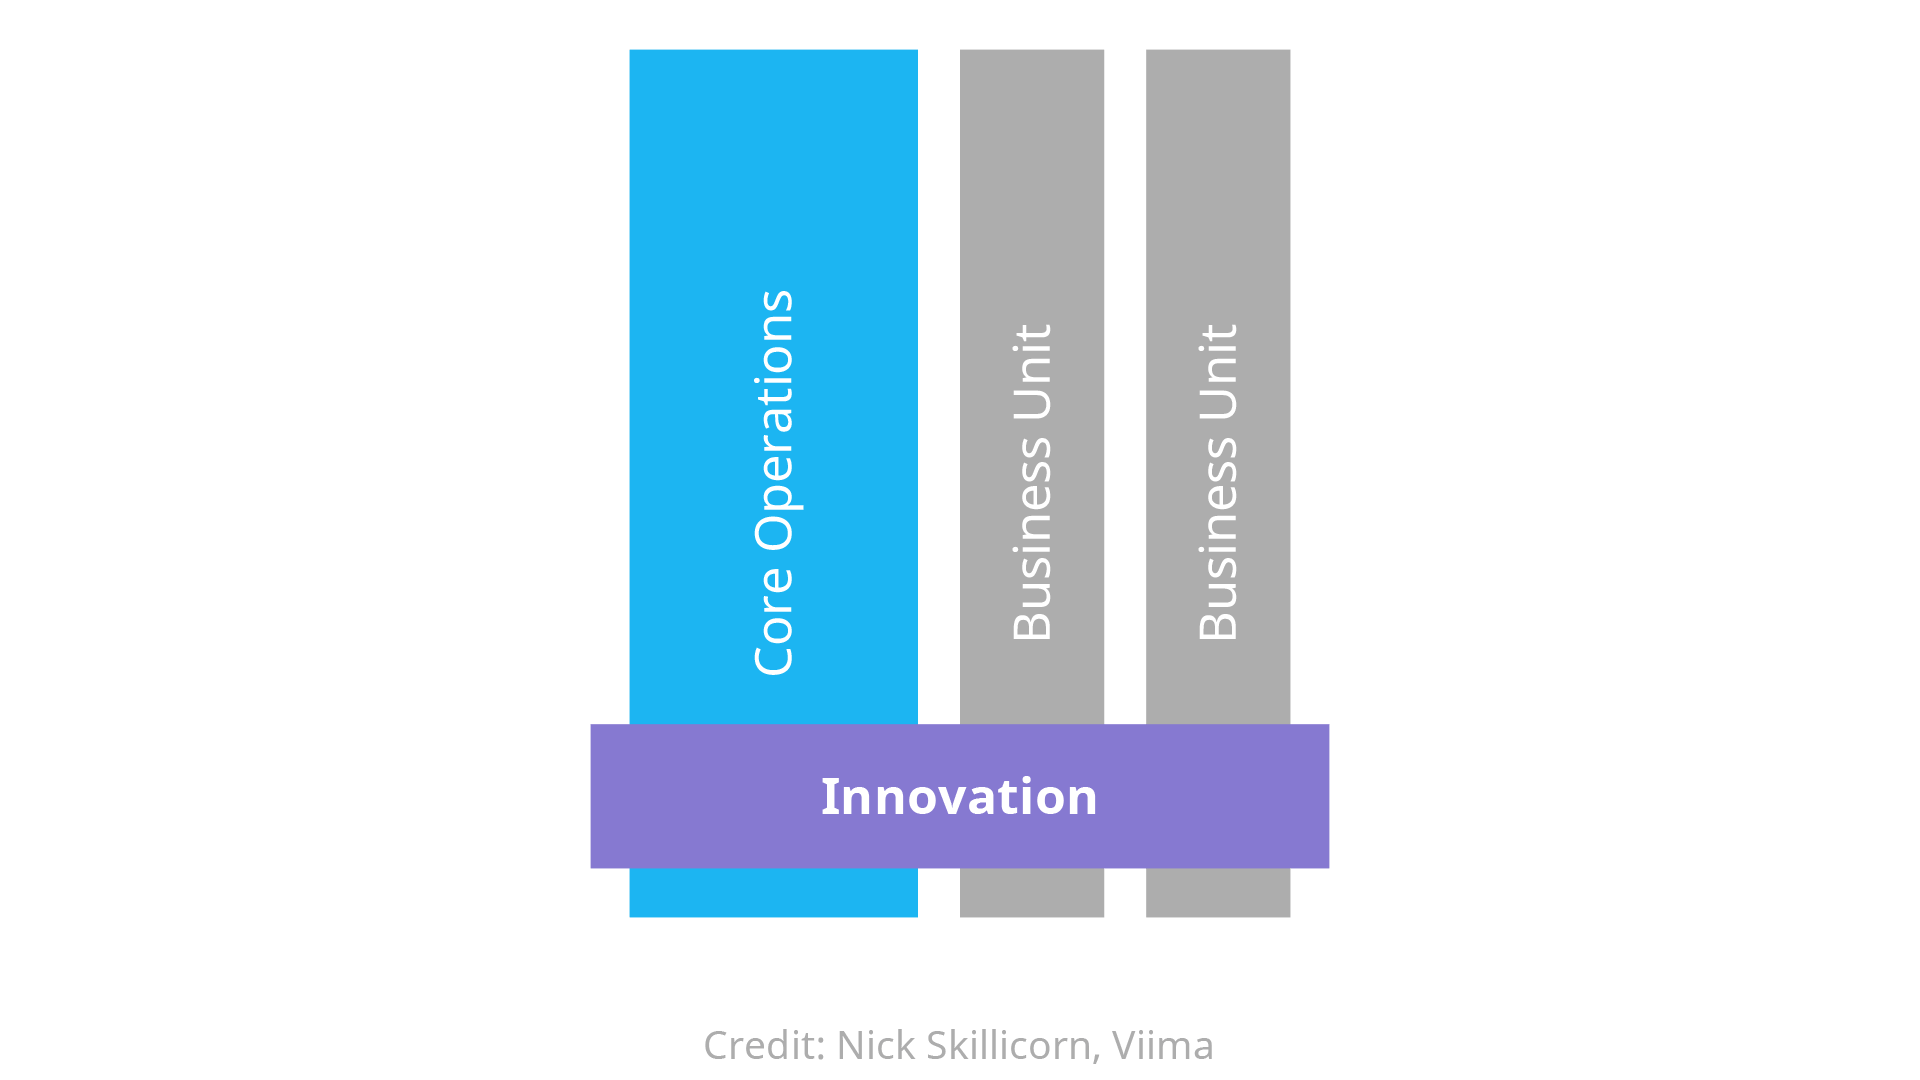 centralized-innovation-organizational-model